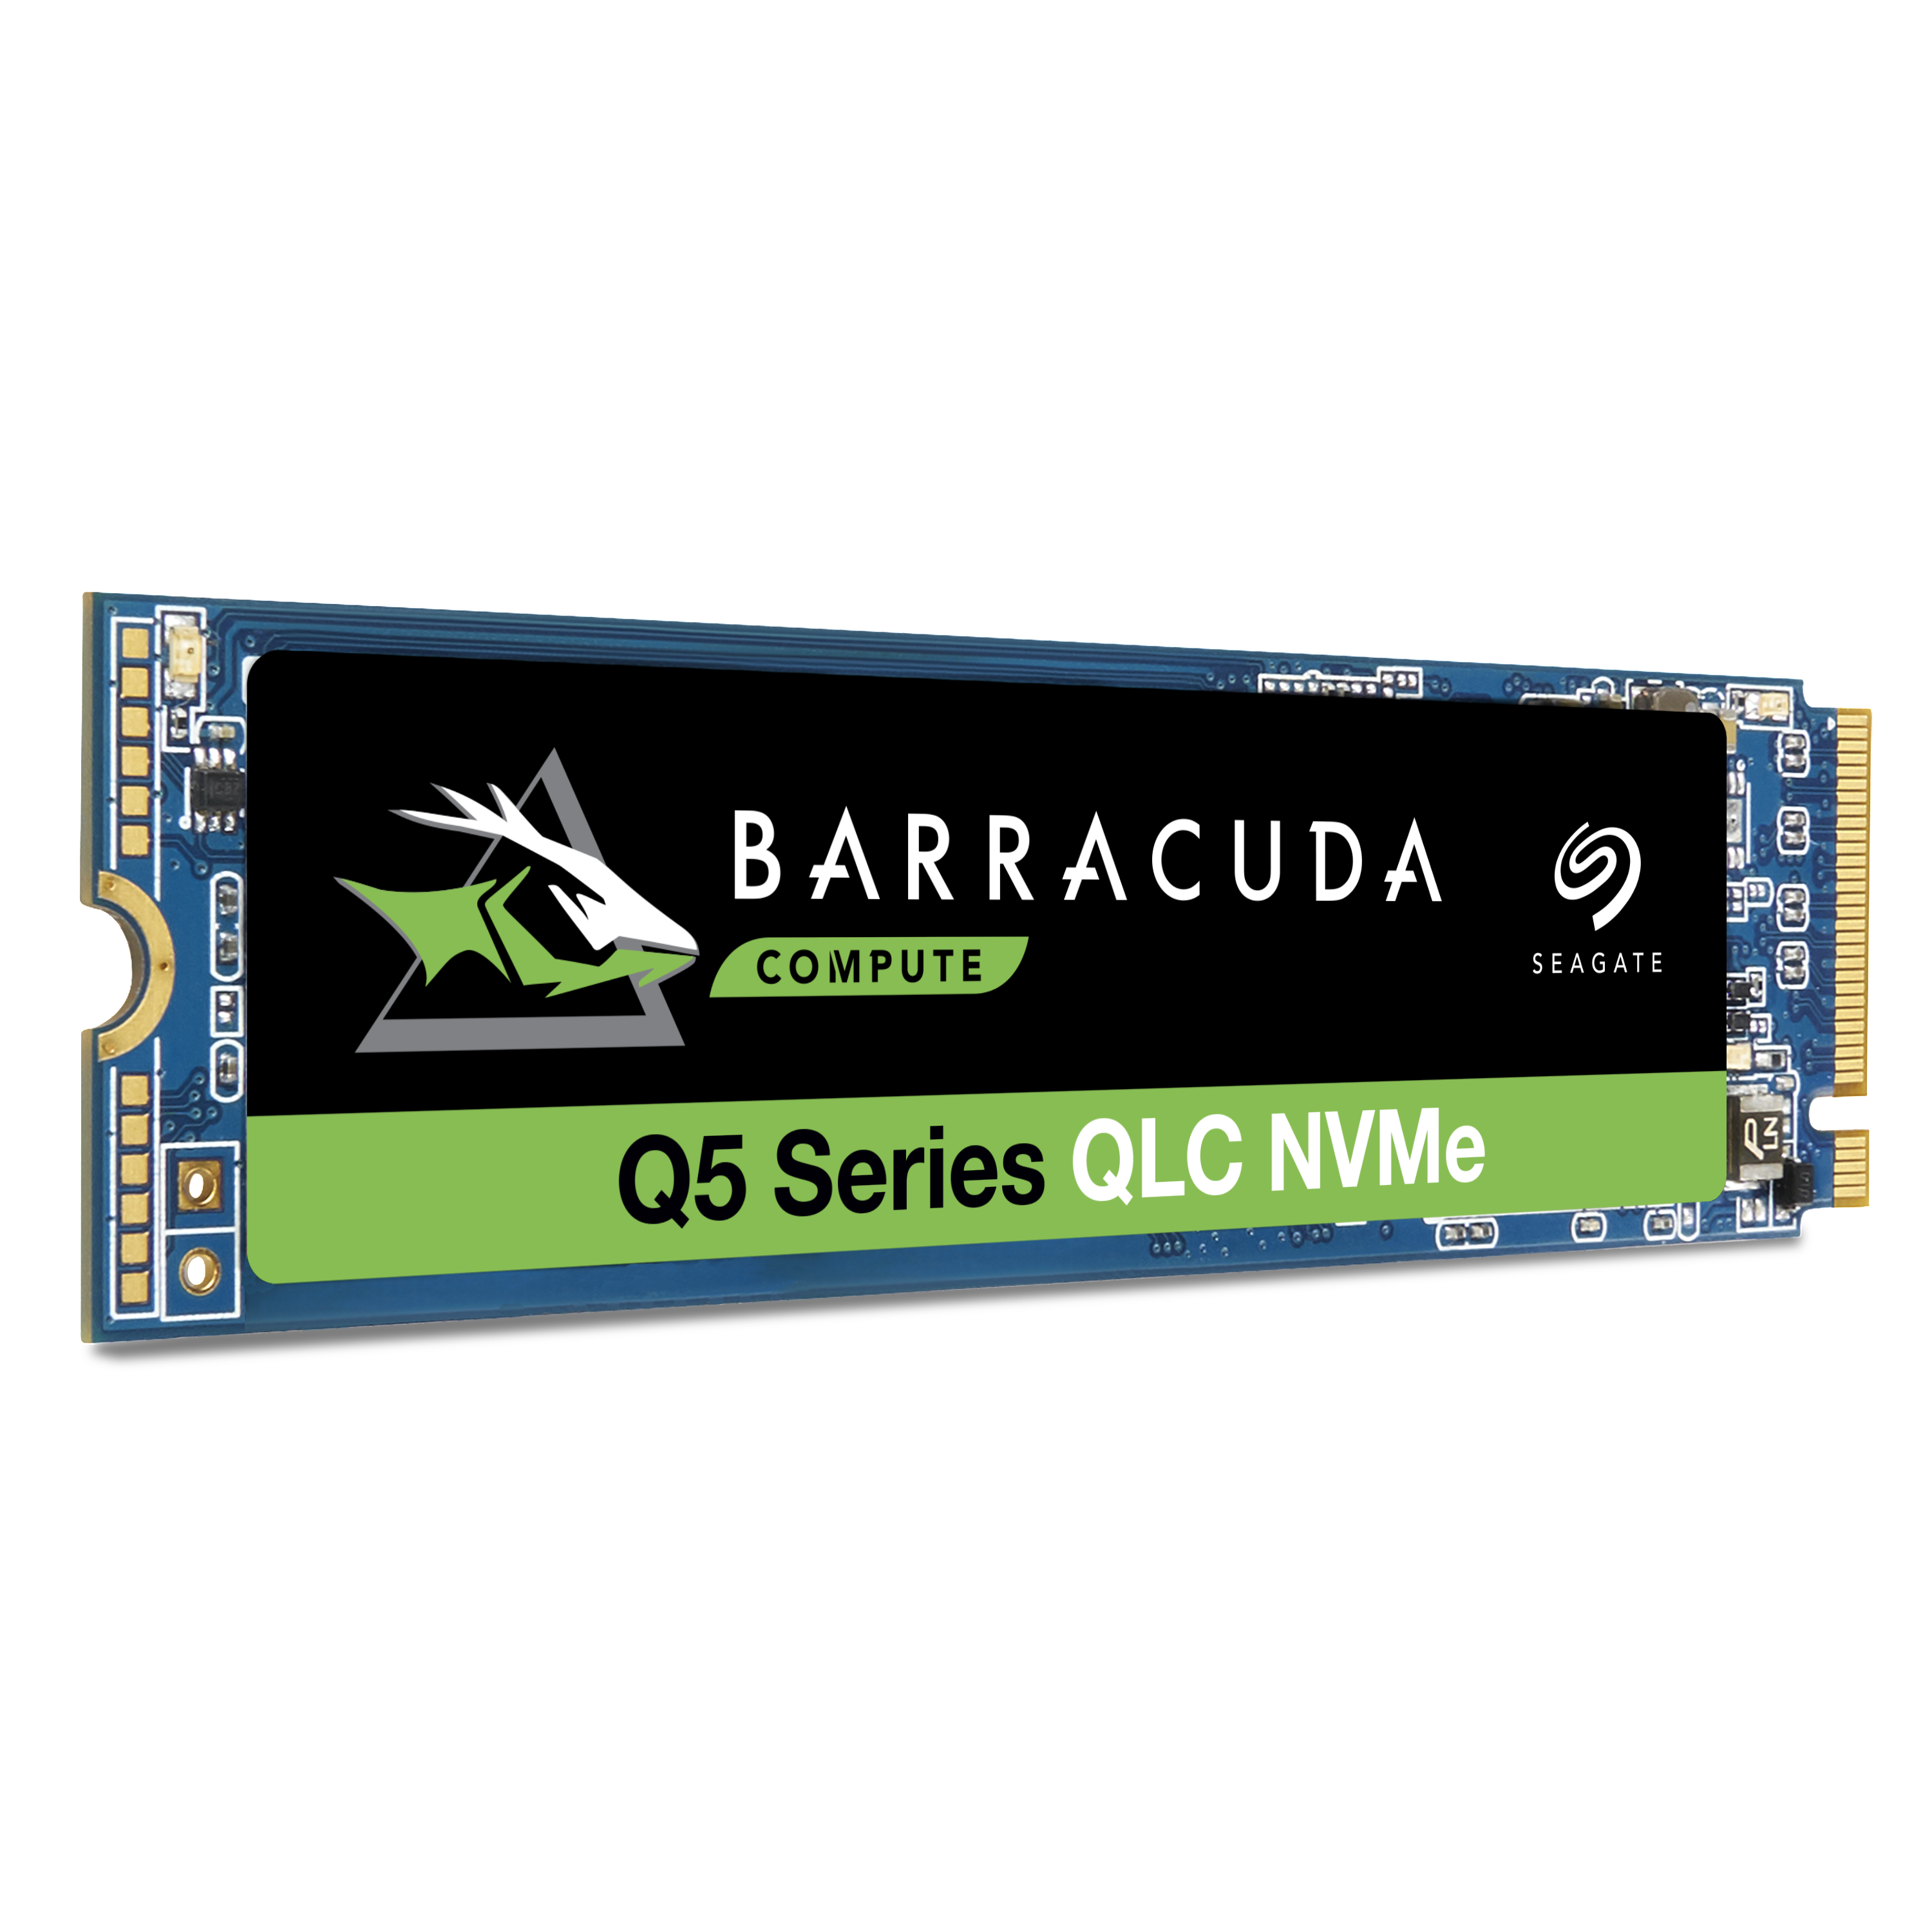 SEAGATE TB 1 BarraCuda Festplatte Q5 Express, intern SSD Bulk, PCI